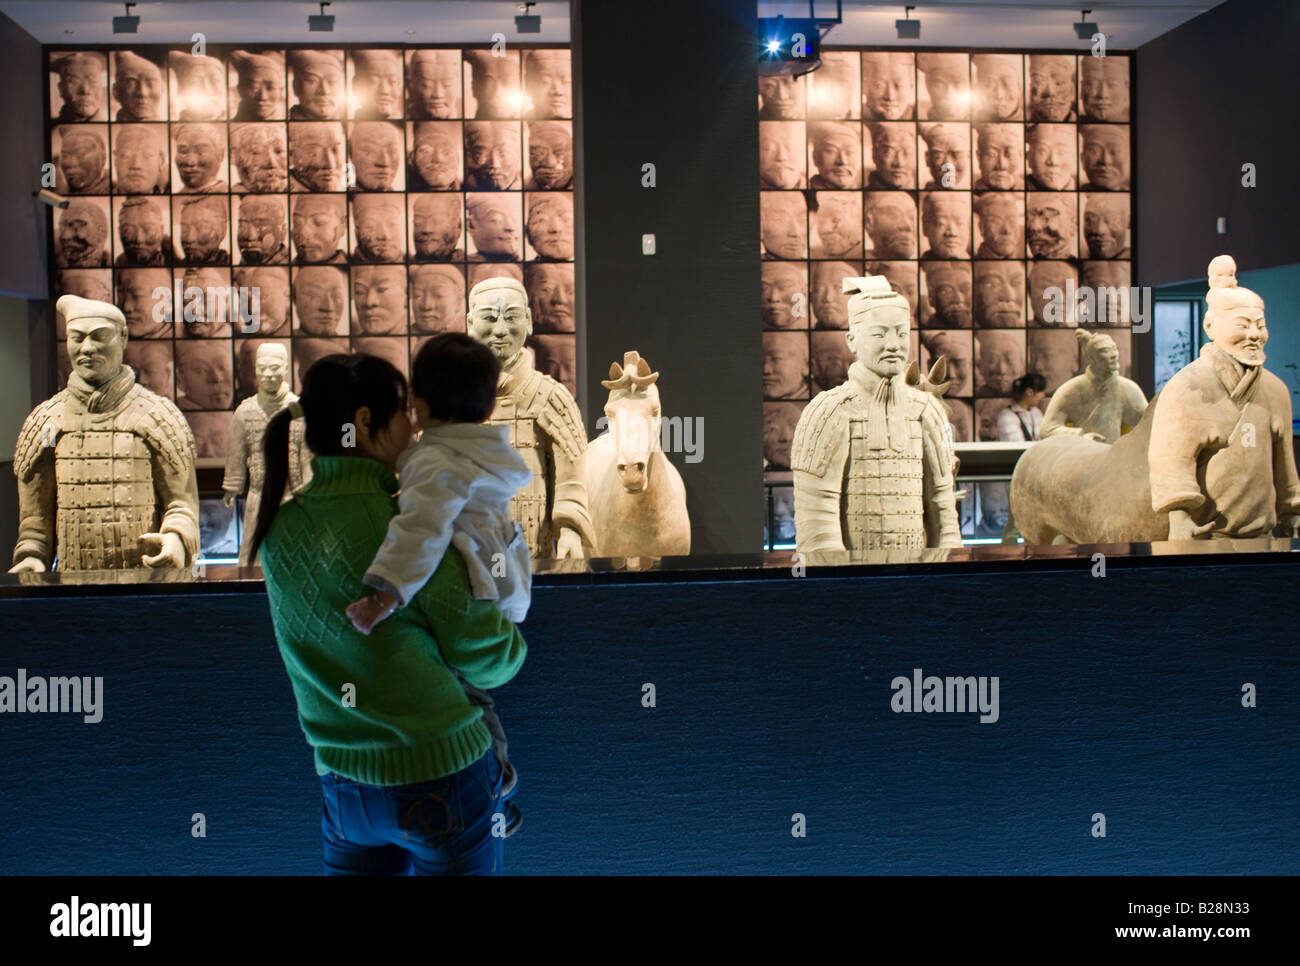 Les touristes voir guerriers de terre cuite sur l'affichage dans le musée d'histoire de Shaanxi Xian Chine Banque D'Images